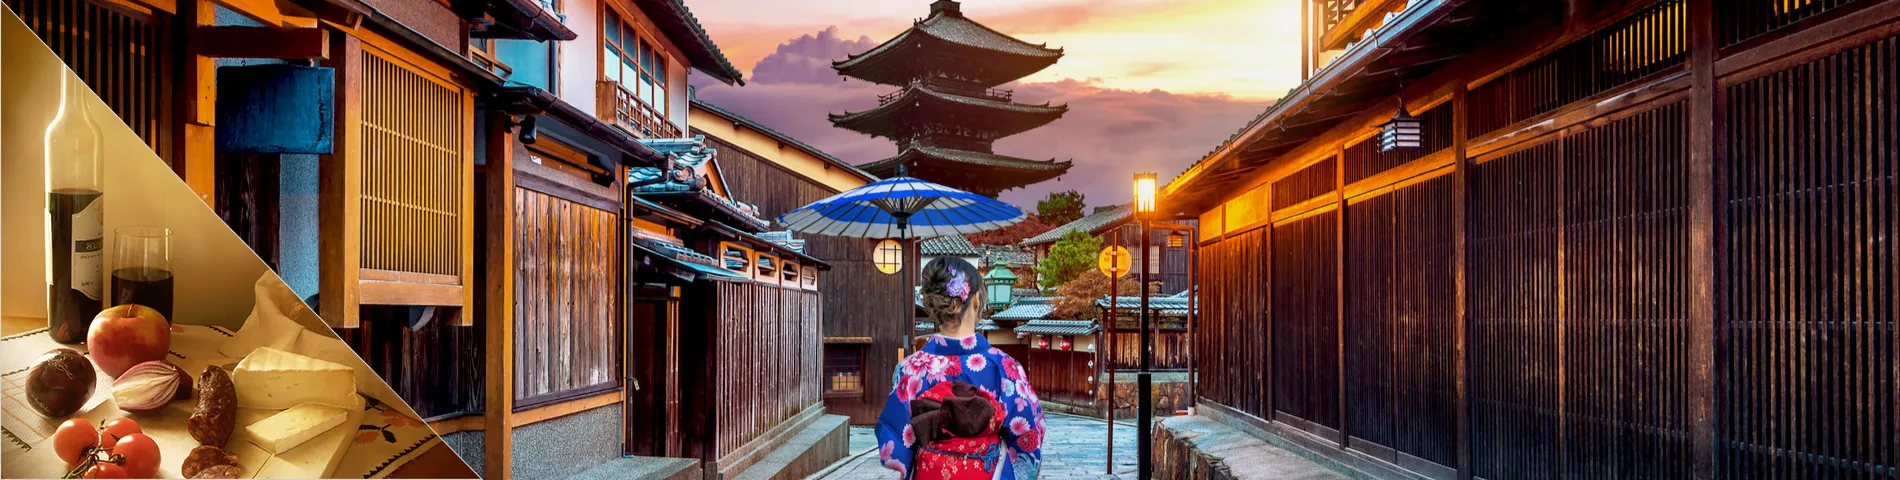 اليابان - (دورة الثقافة مجتمعة)